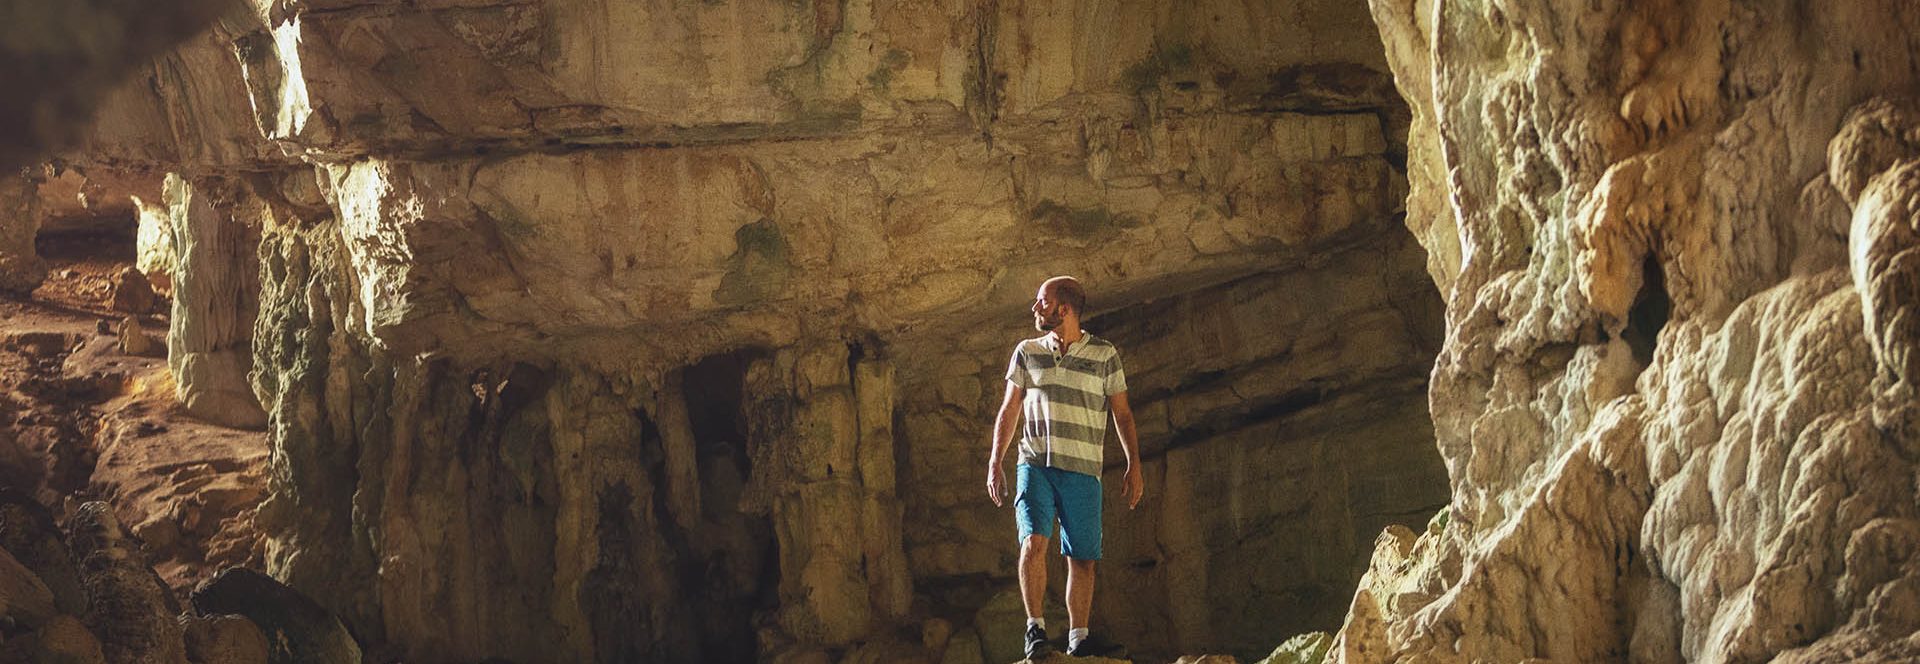 Cueva de Berna República Dominicana